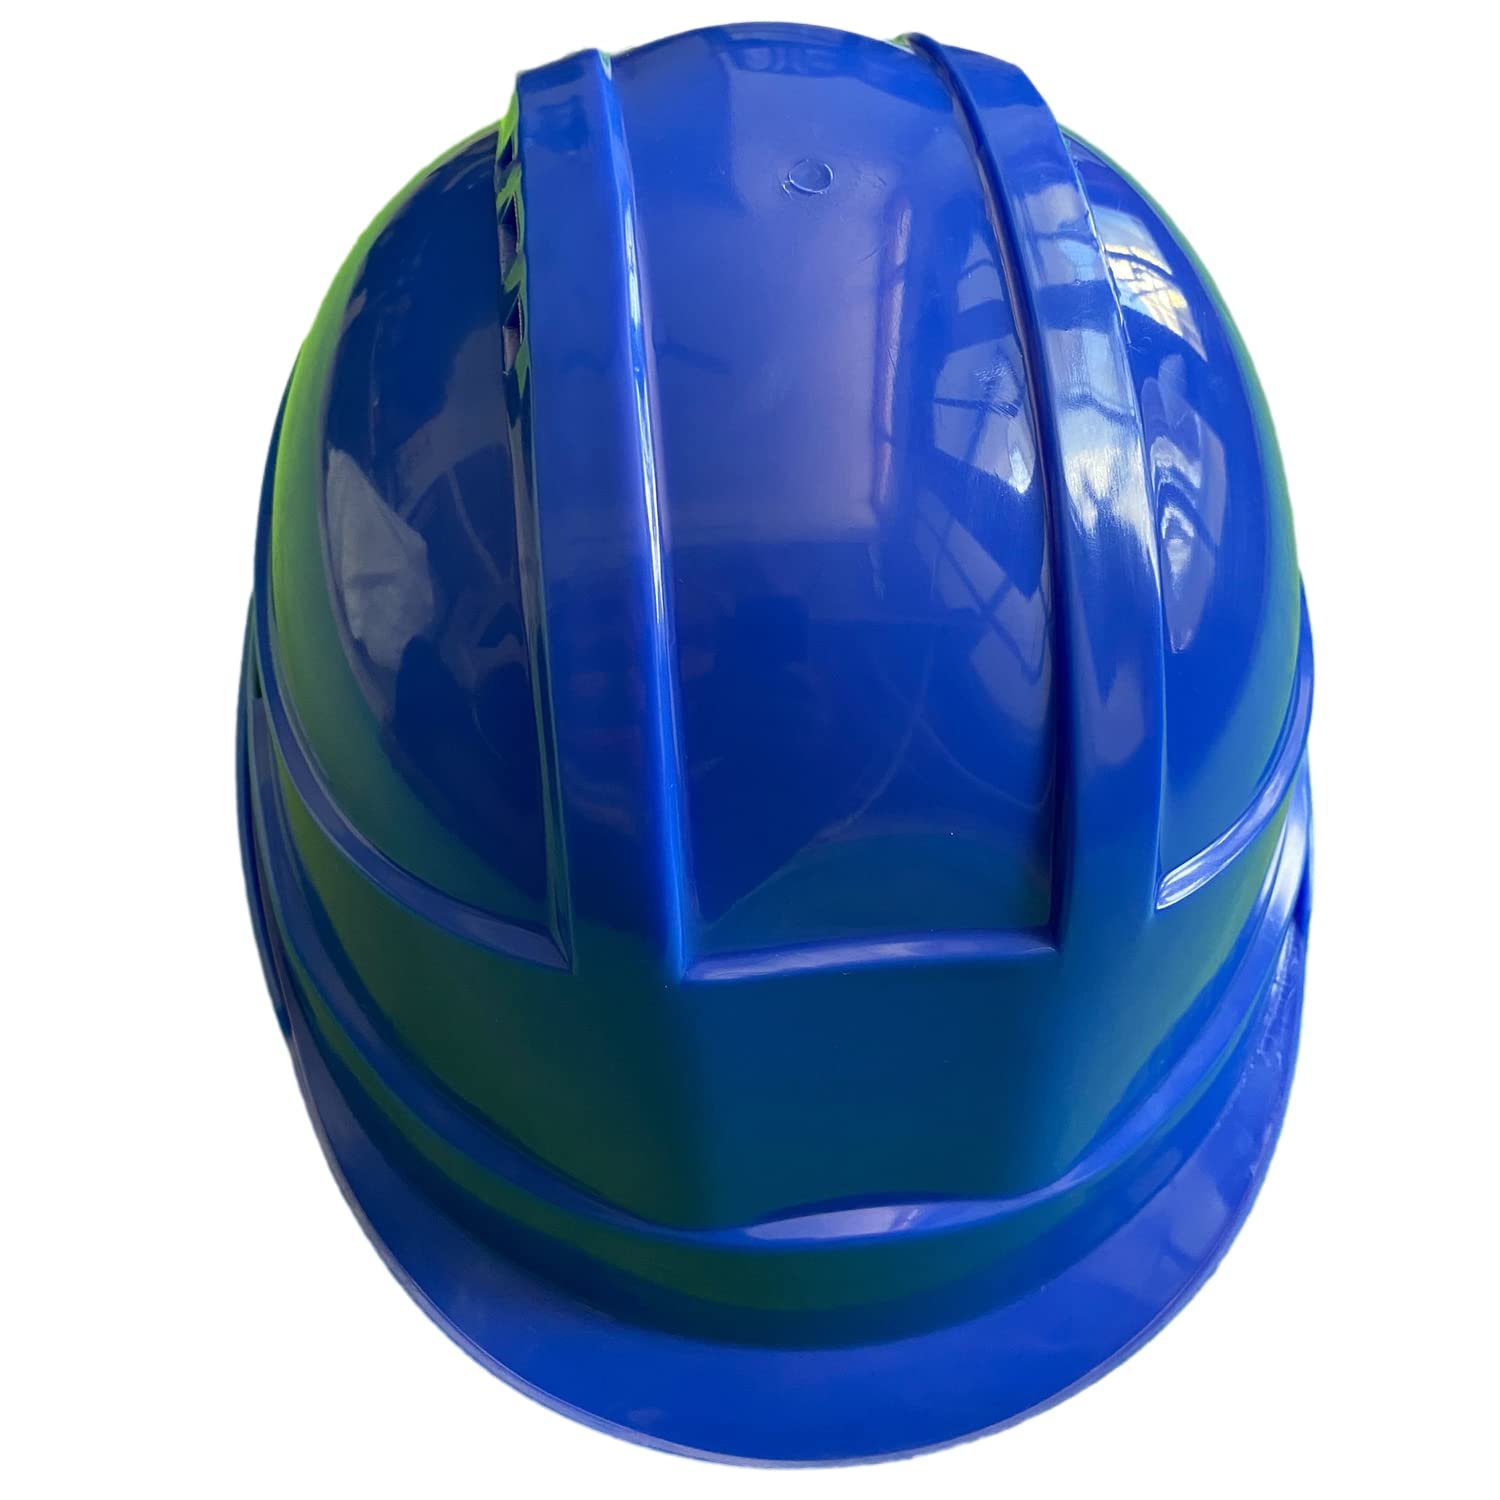 Safety Helmet| industrial safety helmet| safety helmet for construction| industrial helmet| best construction safety helmet